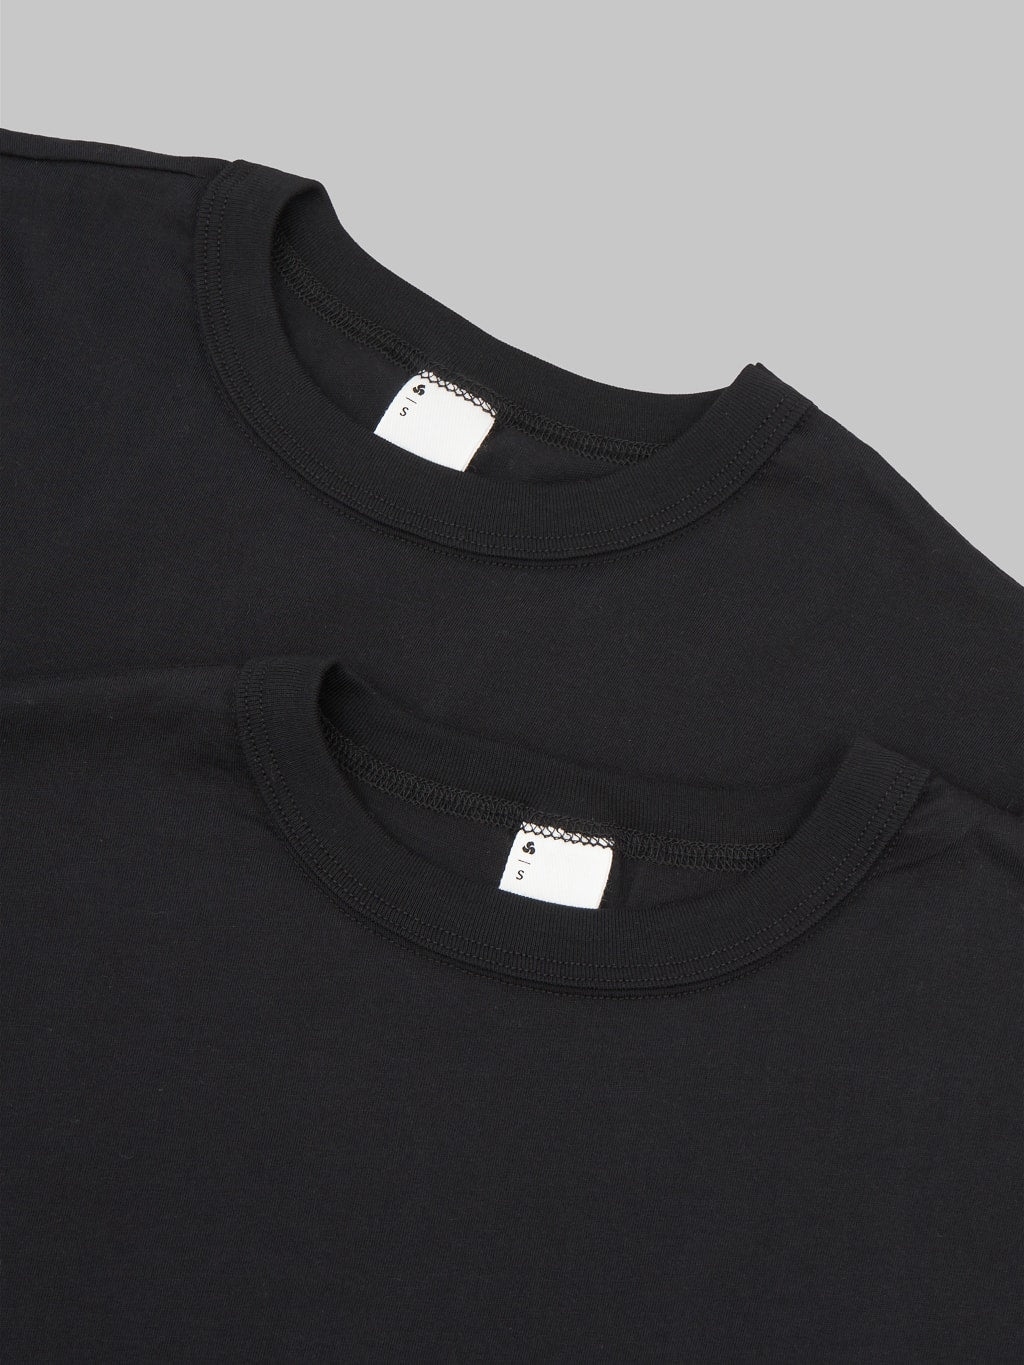 3sixteen pima cotton t-shirt pack collar detail